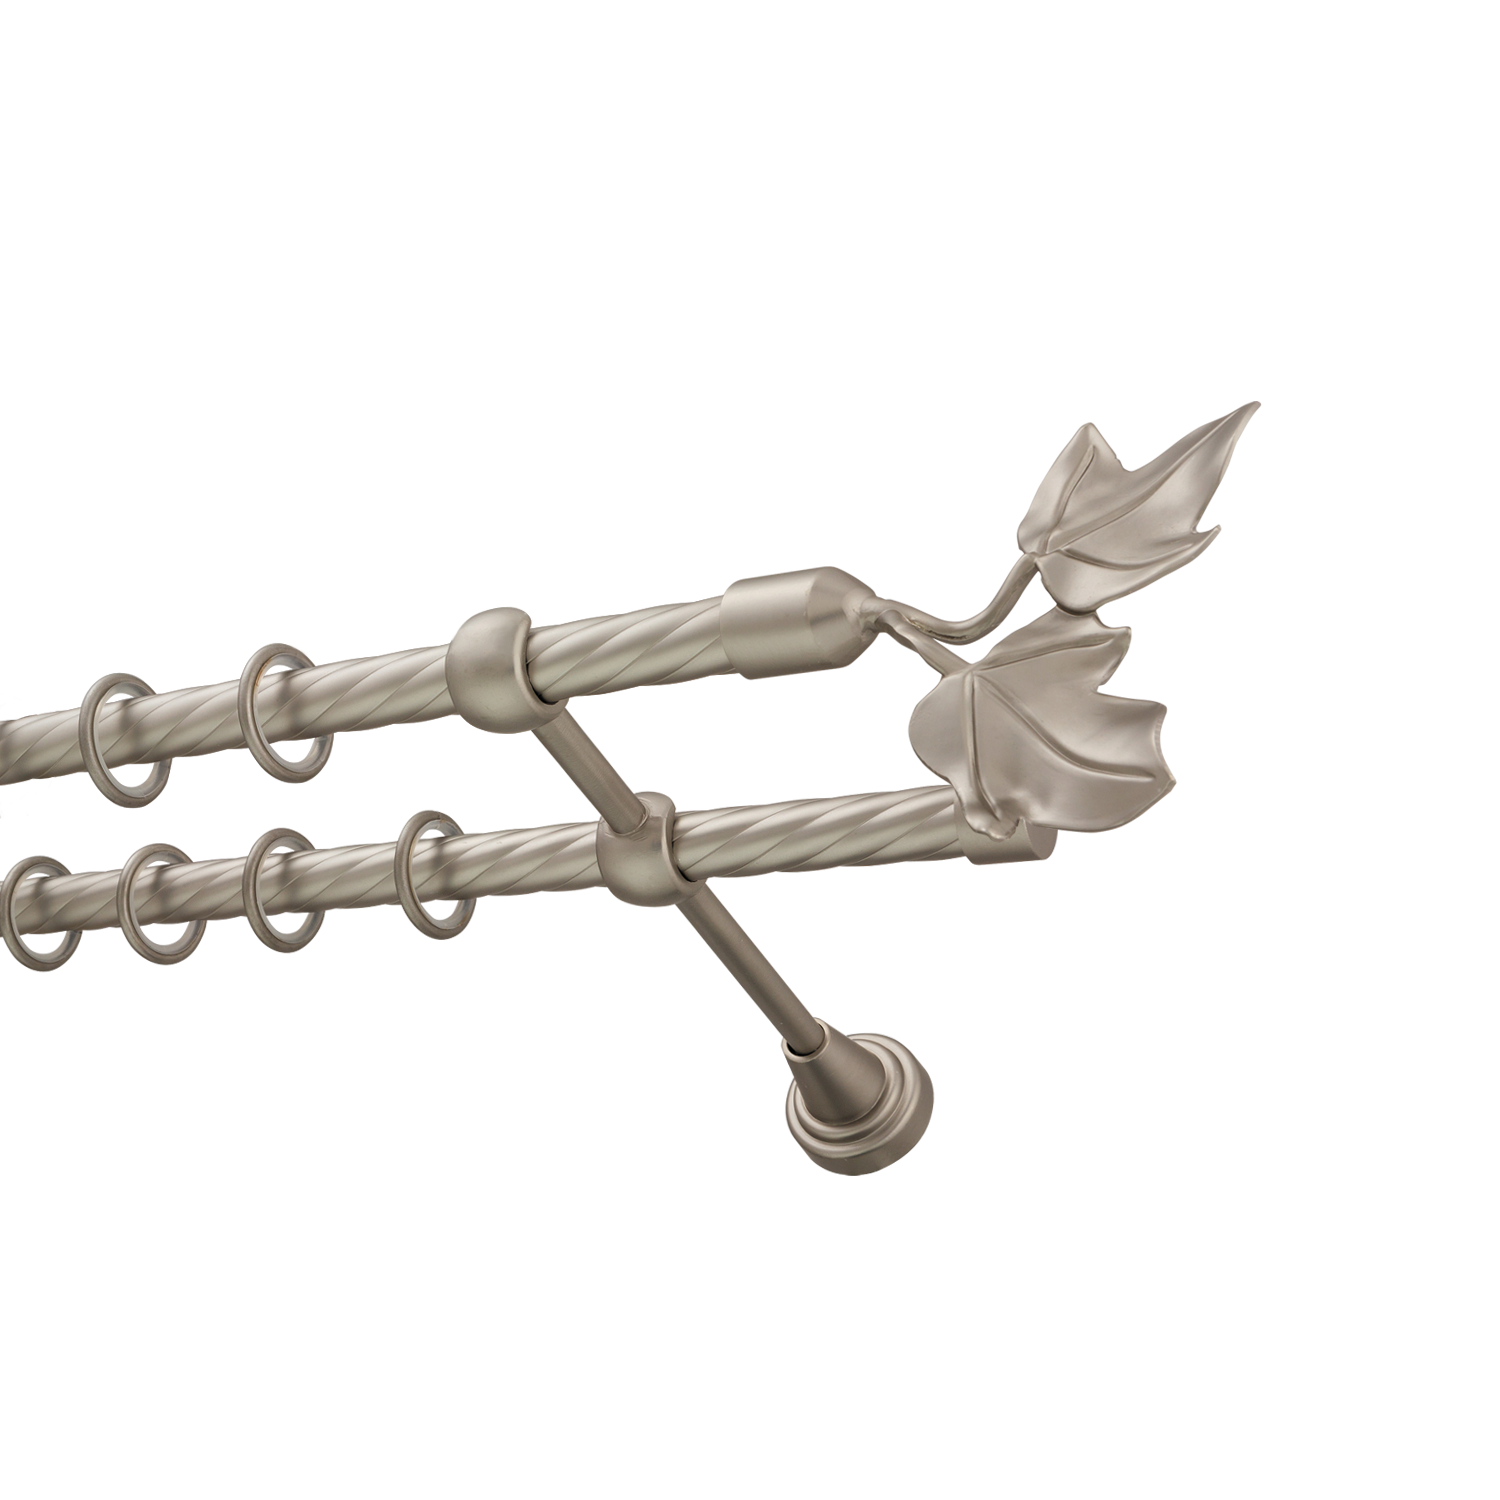 Металлический карниз для штор Листья, двухрядный 16/16 мм, сталь, витая штанга, длина 180 см - фото Wikidecor.ru